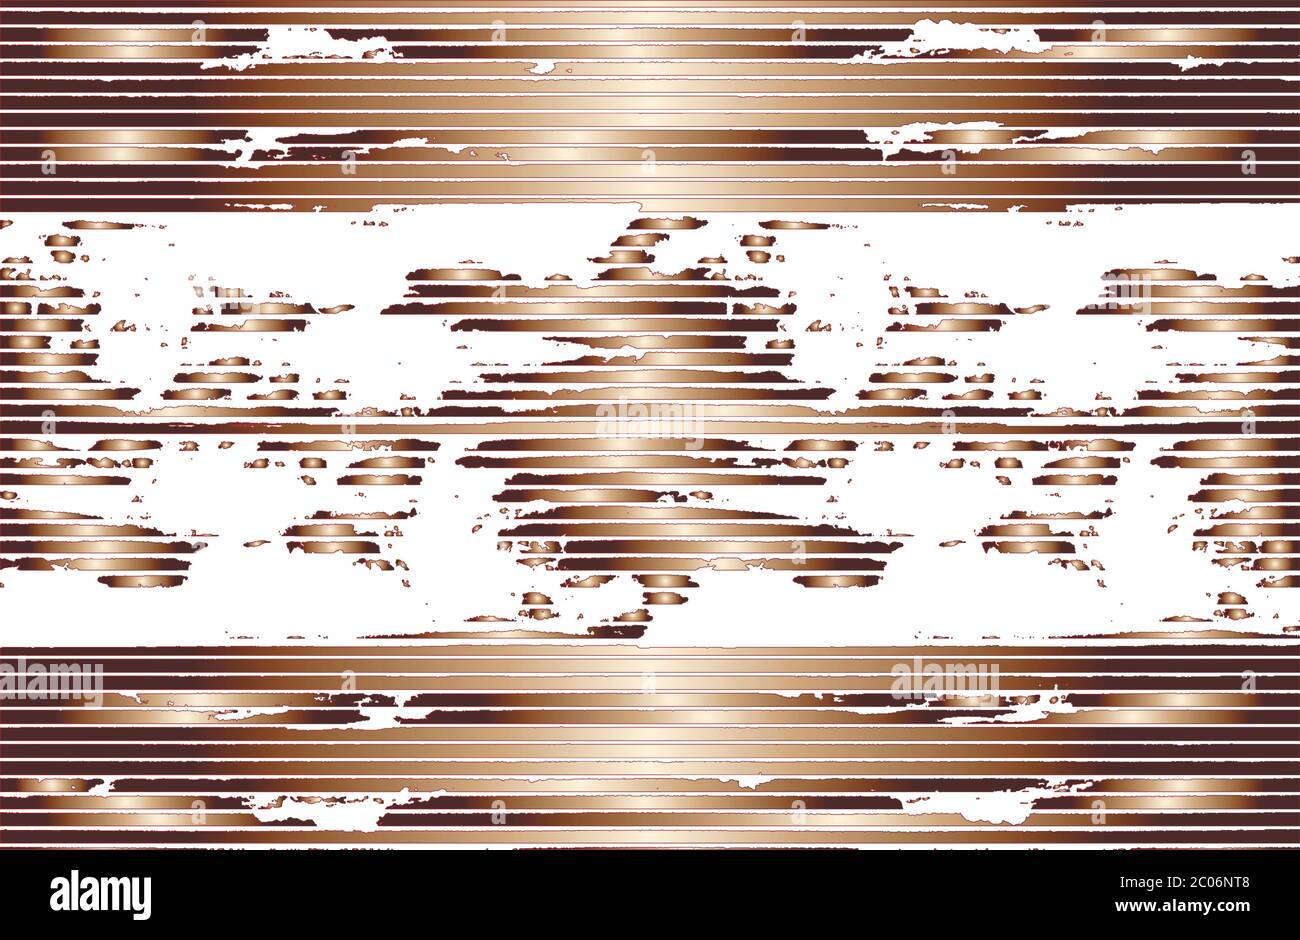 Vecteur abstrait doré, fond de grunge en cuivre avec bandes horizontales, dégradé et fractal. Illustration EPS8 Illustration de Vecteur